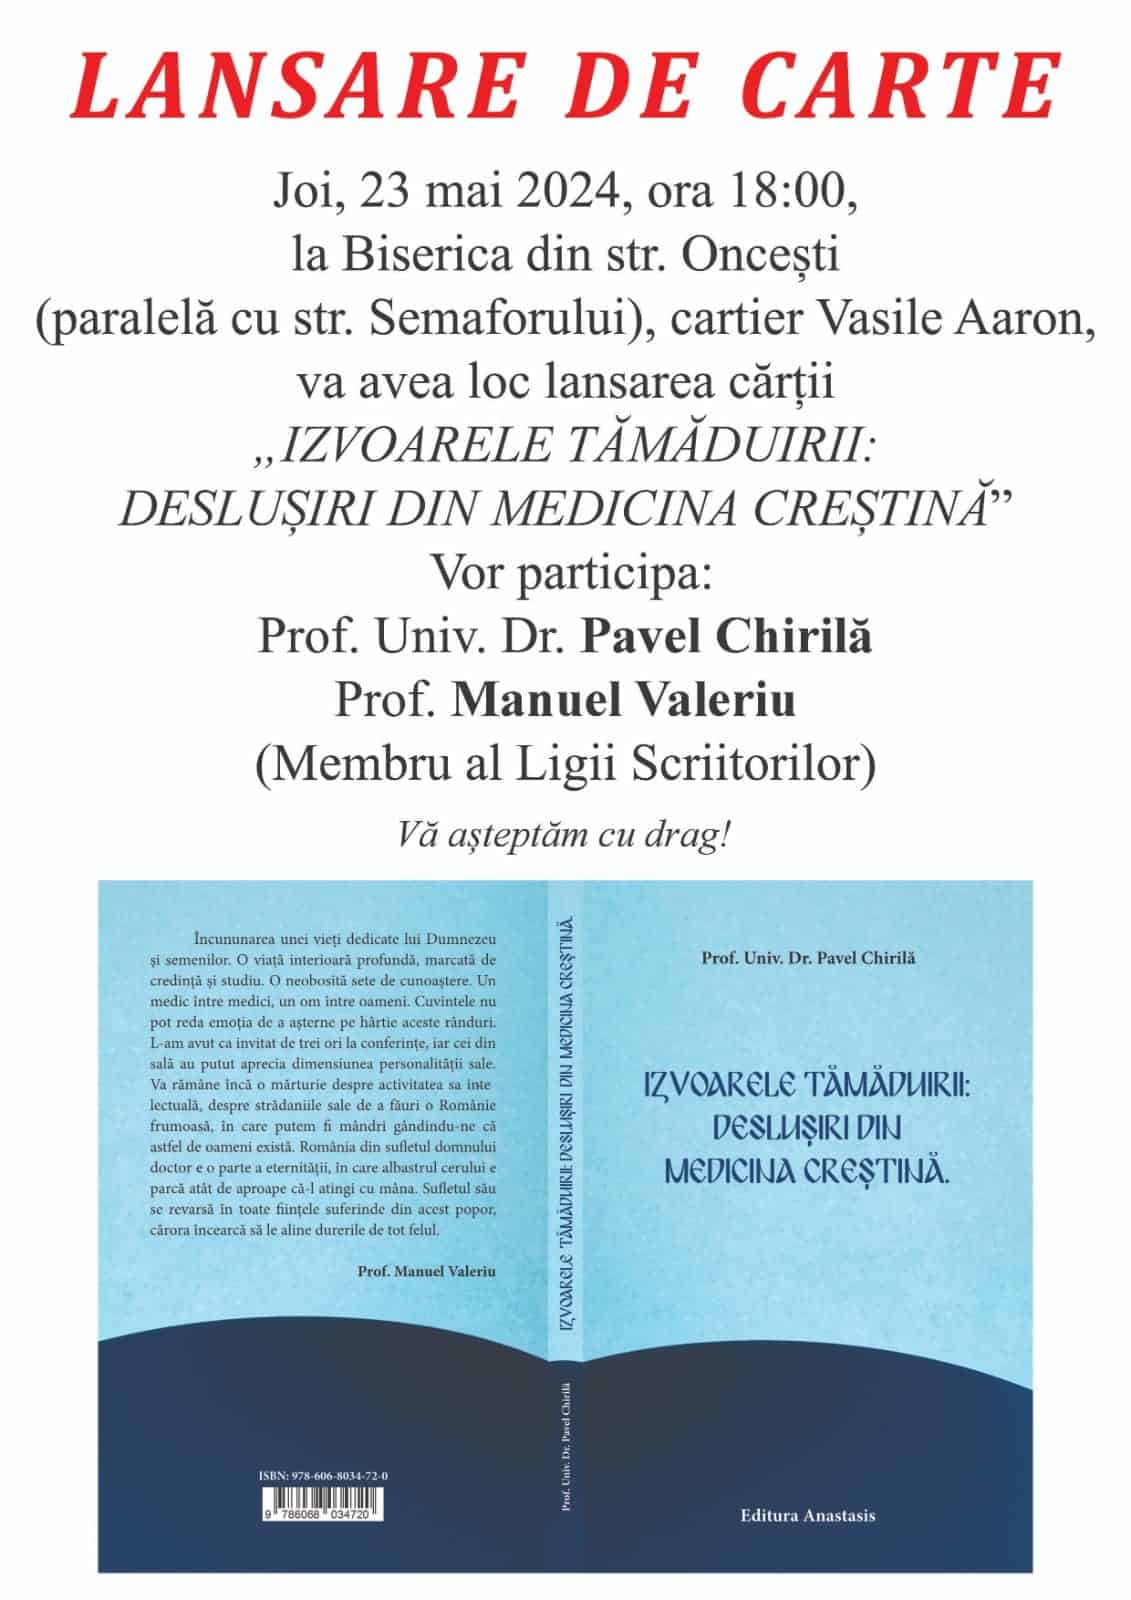 lansare de carte dr. pavel chirilă și închinare la odoare sfinte la biserica ortodoxă de pe oncești